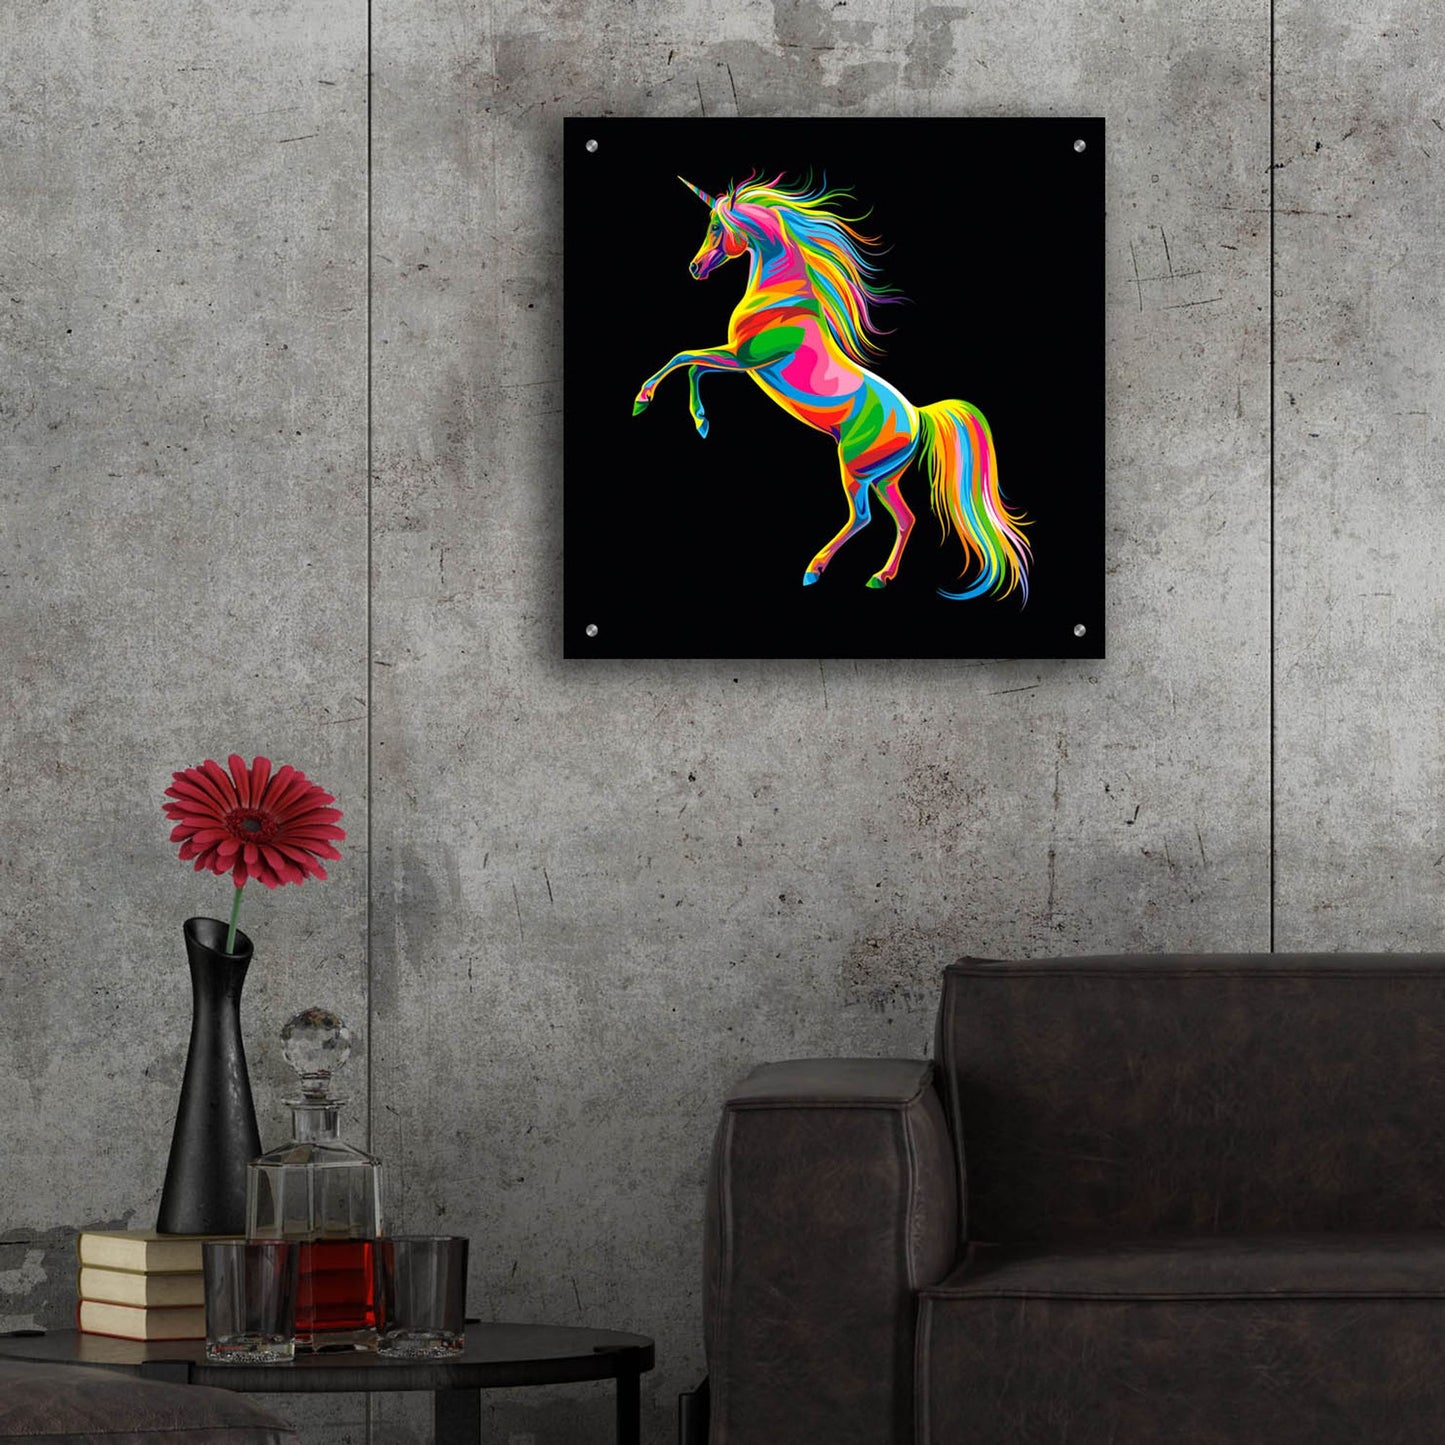 Epic Art 'Unicorn' by Bob Weer, Acrylic Glass Wall Art,24x24